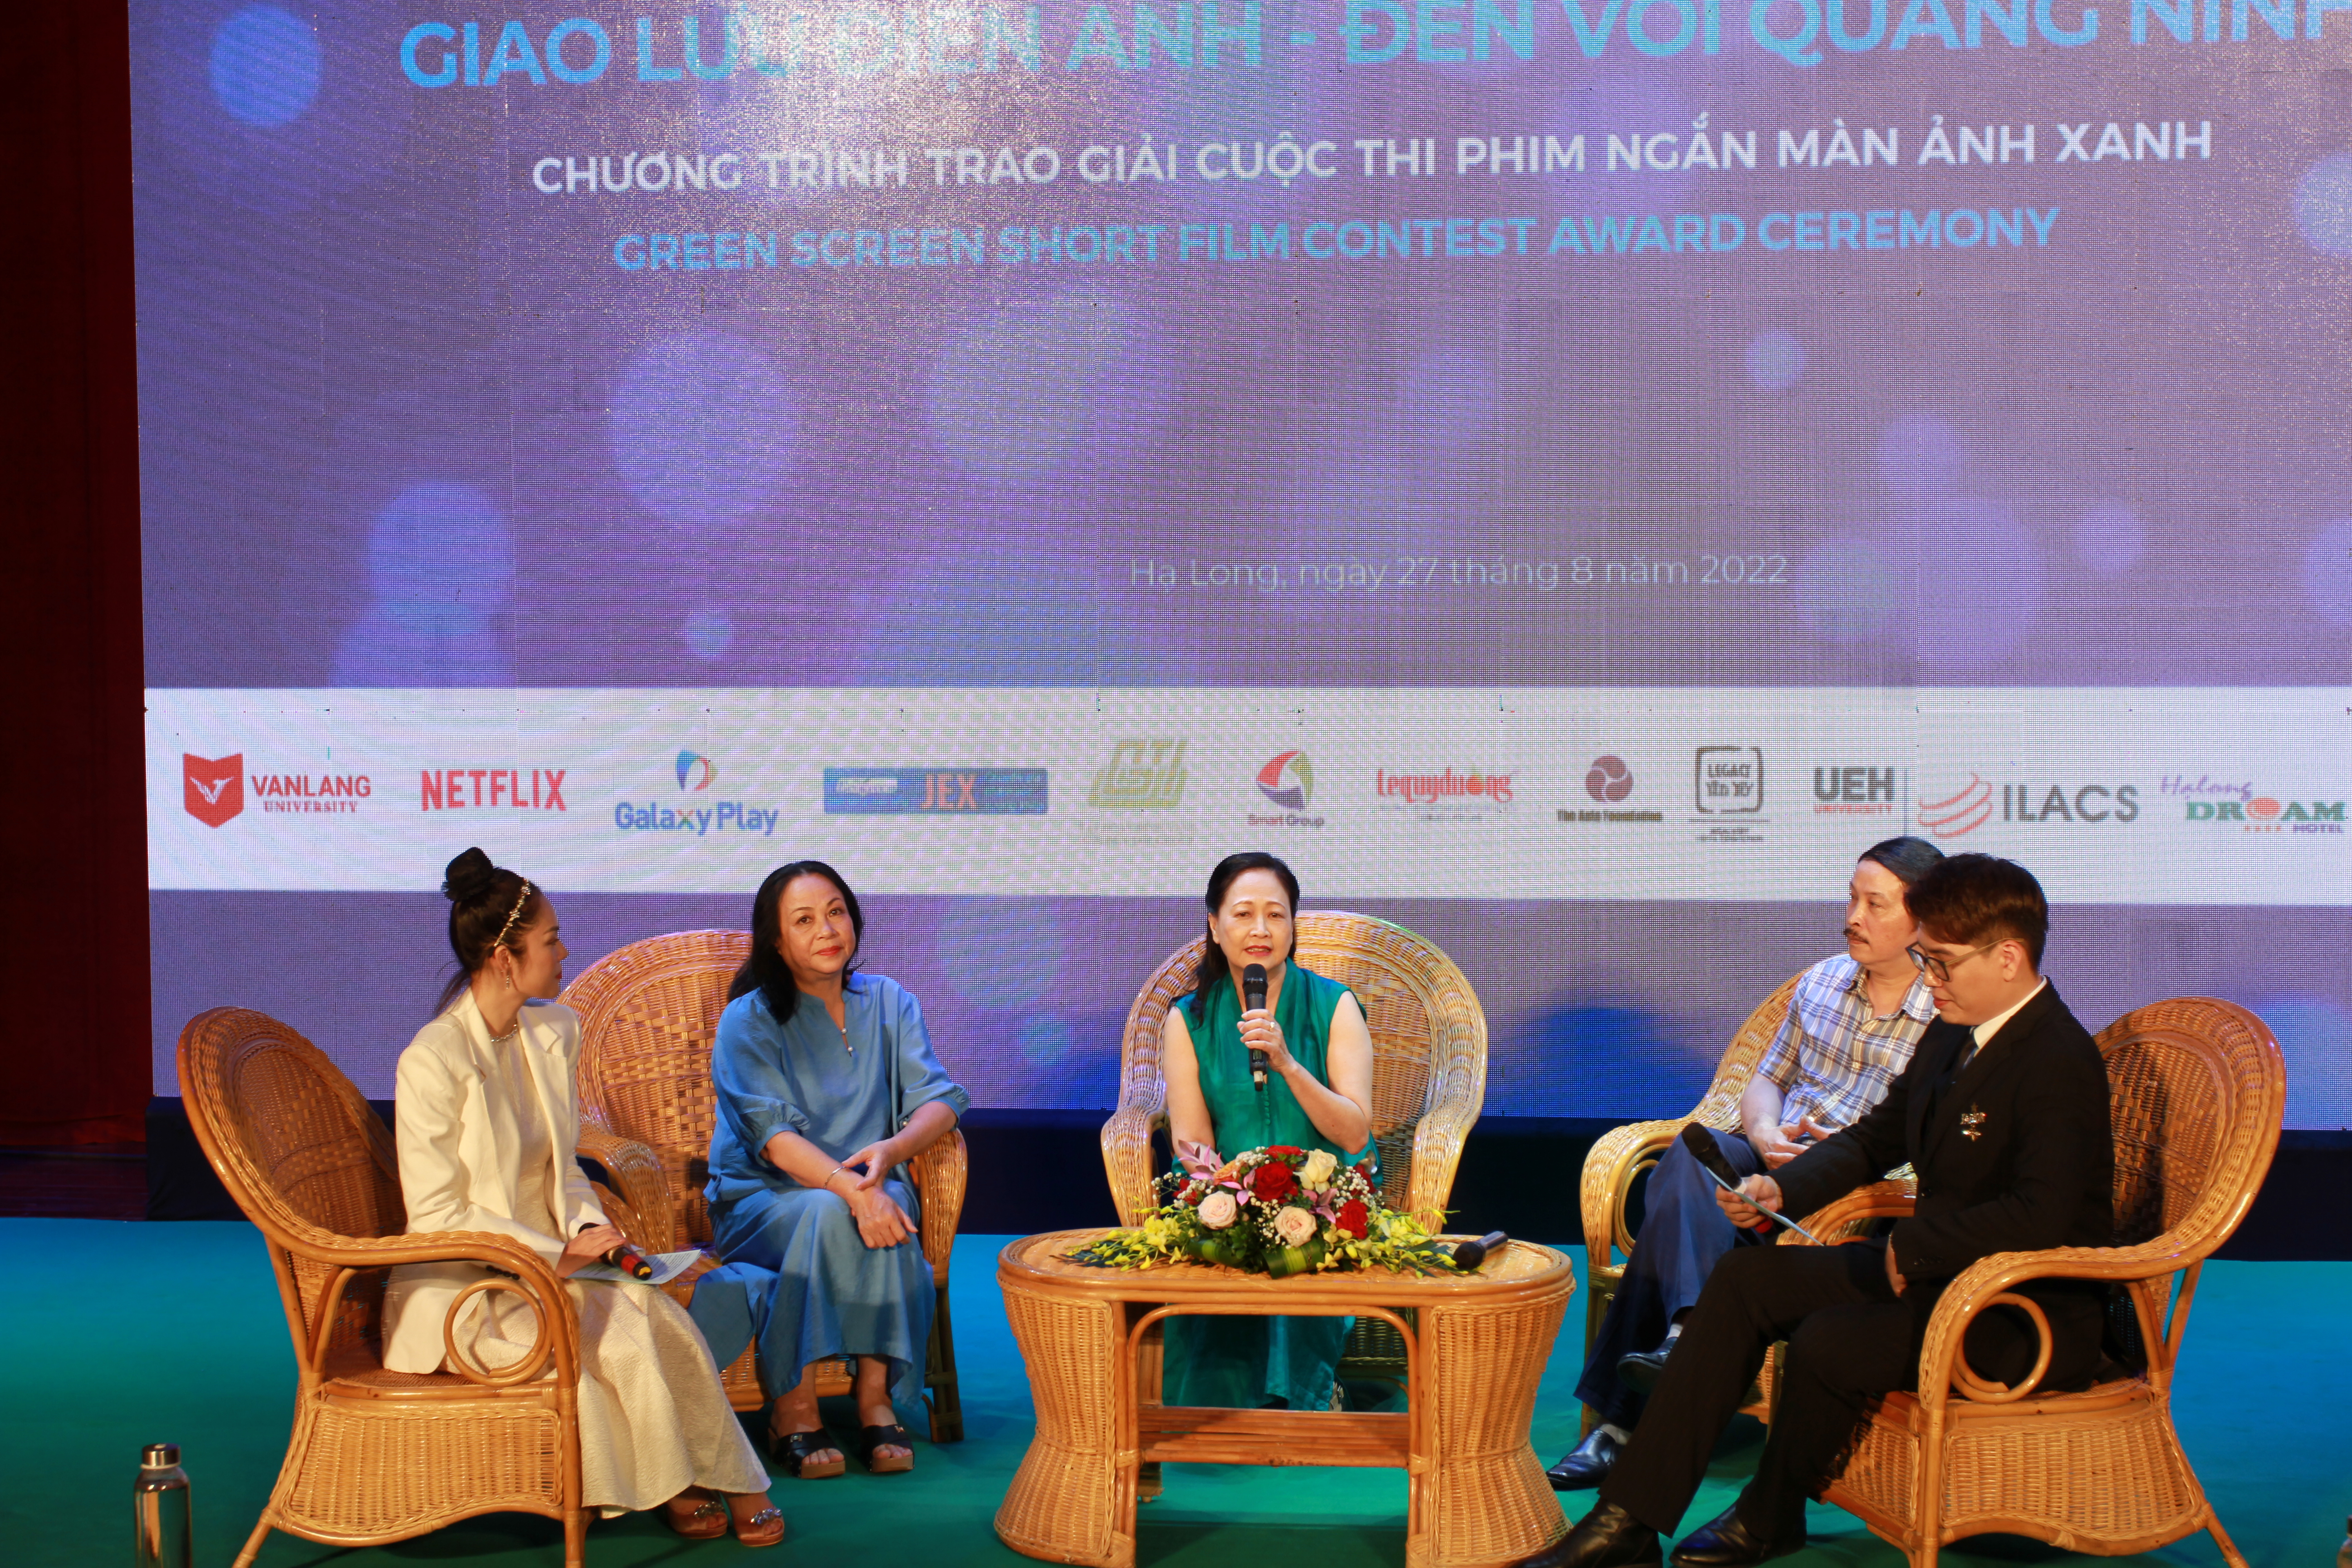 Các nghệ sĩ diễn viên gạo cội trò chuyện về kỷ niệm làm phim ở Quảng Ninh.